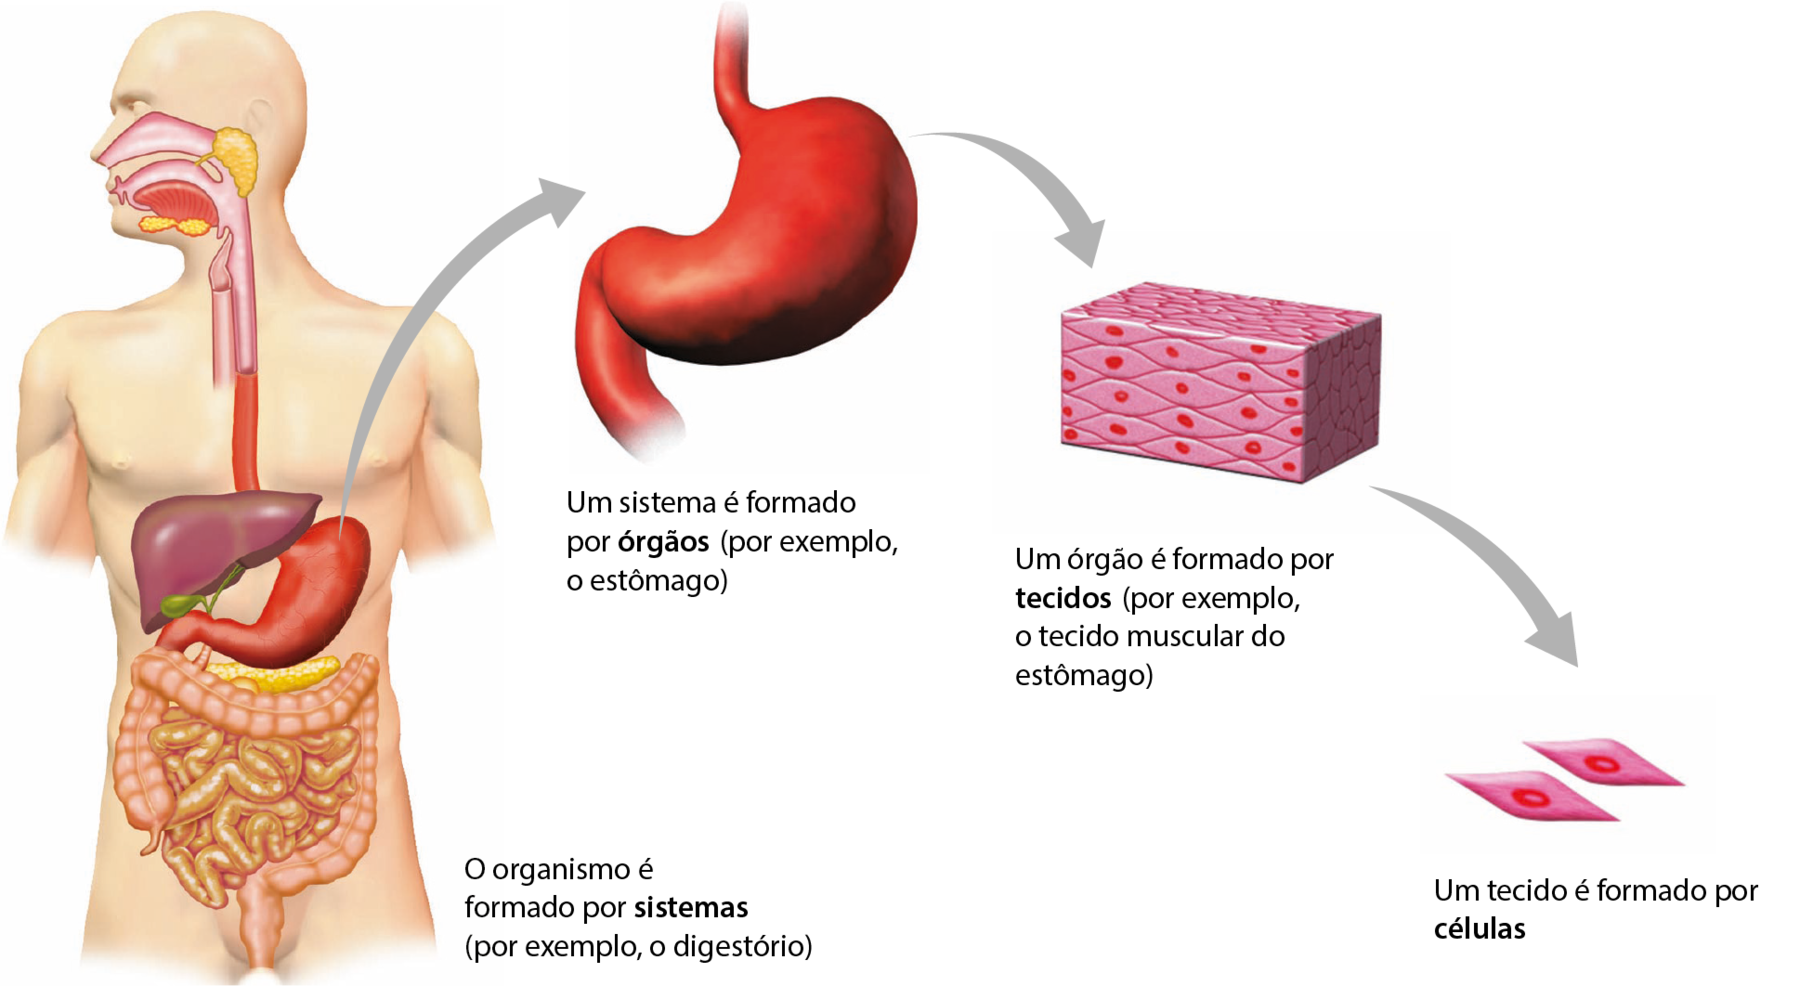 Esquema. Contorno de uma pessoa, mostrando alguns de seus órgãos. O organismo é formado por sistemas (por exemplo, o digestório). De um órgão vermelho de formato oval e abaulado sai seta para sua imagem isolada e ampliada. Um sistema é formado por órgãos (por exemplo, o estômago). Seta para uma forma retangular em perspectiva tridimensional composta por estruturas losangulares rosadas com pontos vermelhos no centro unidas. Um órgão é formado por tecidos (por exemplo, o tecido muscular do estômago). Seta para dois losangos rosa com um ponto vermelho dentro isolados. Um tecido é formado por células.